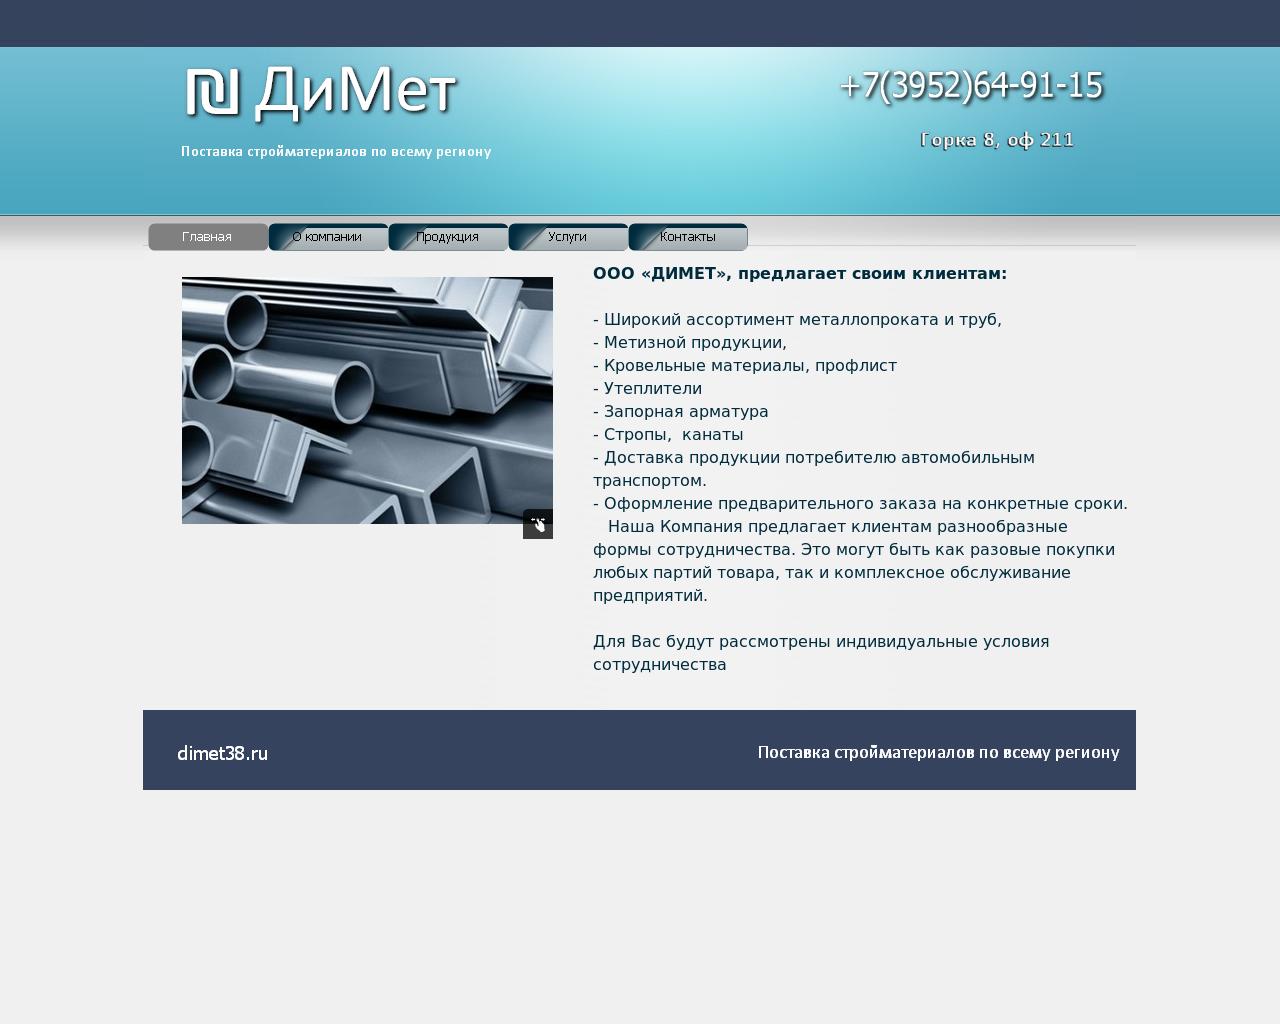 Изображение сайта dimet38.ru в разрешении 1280x1024